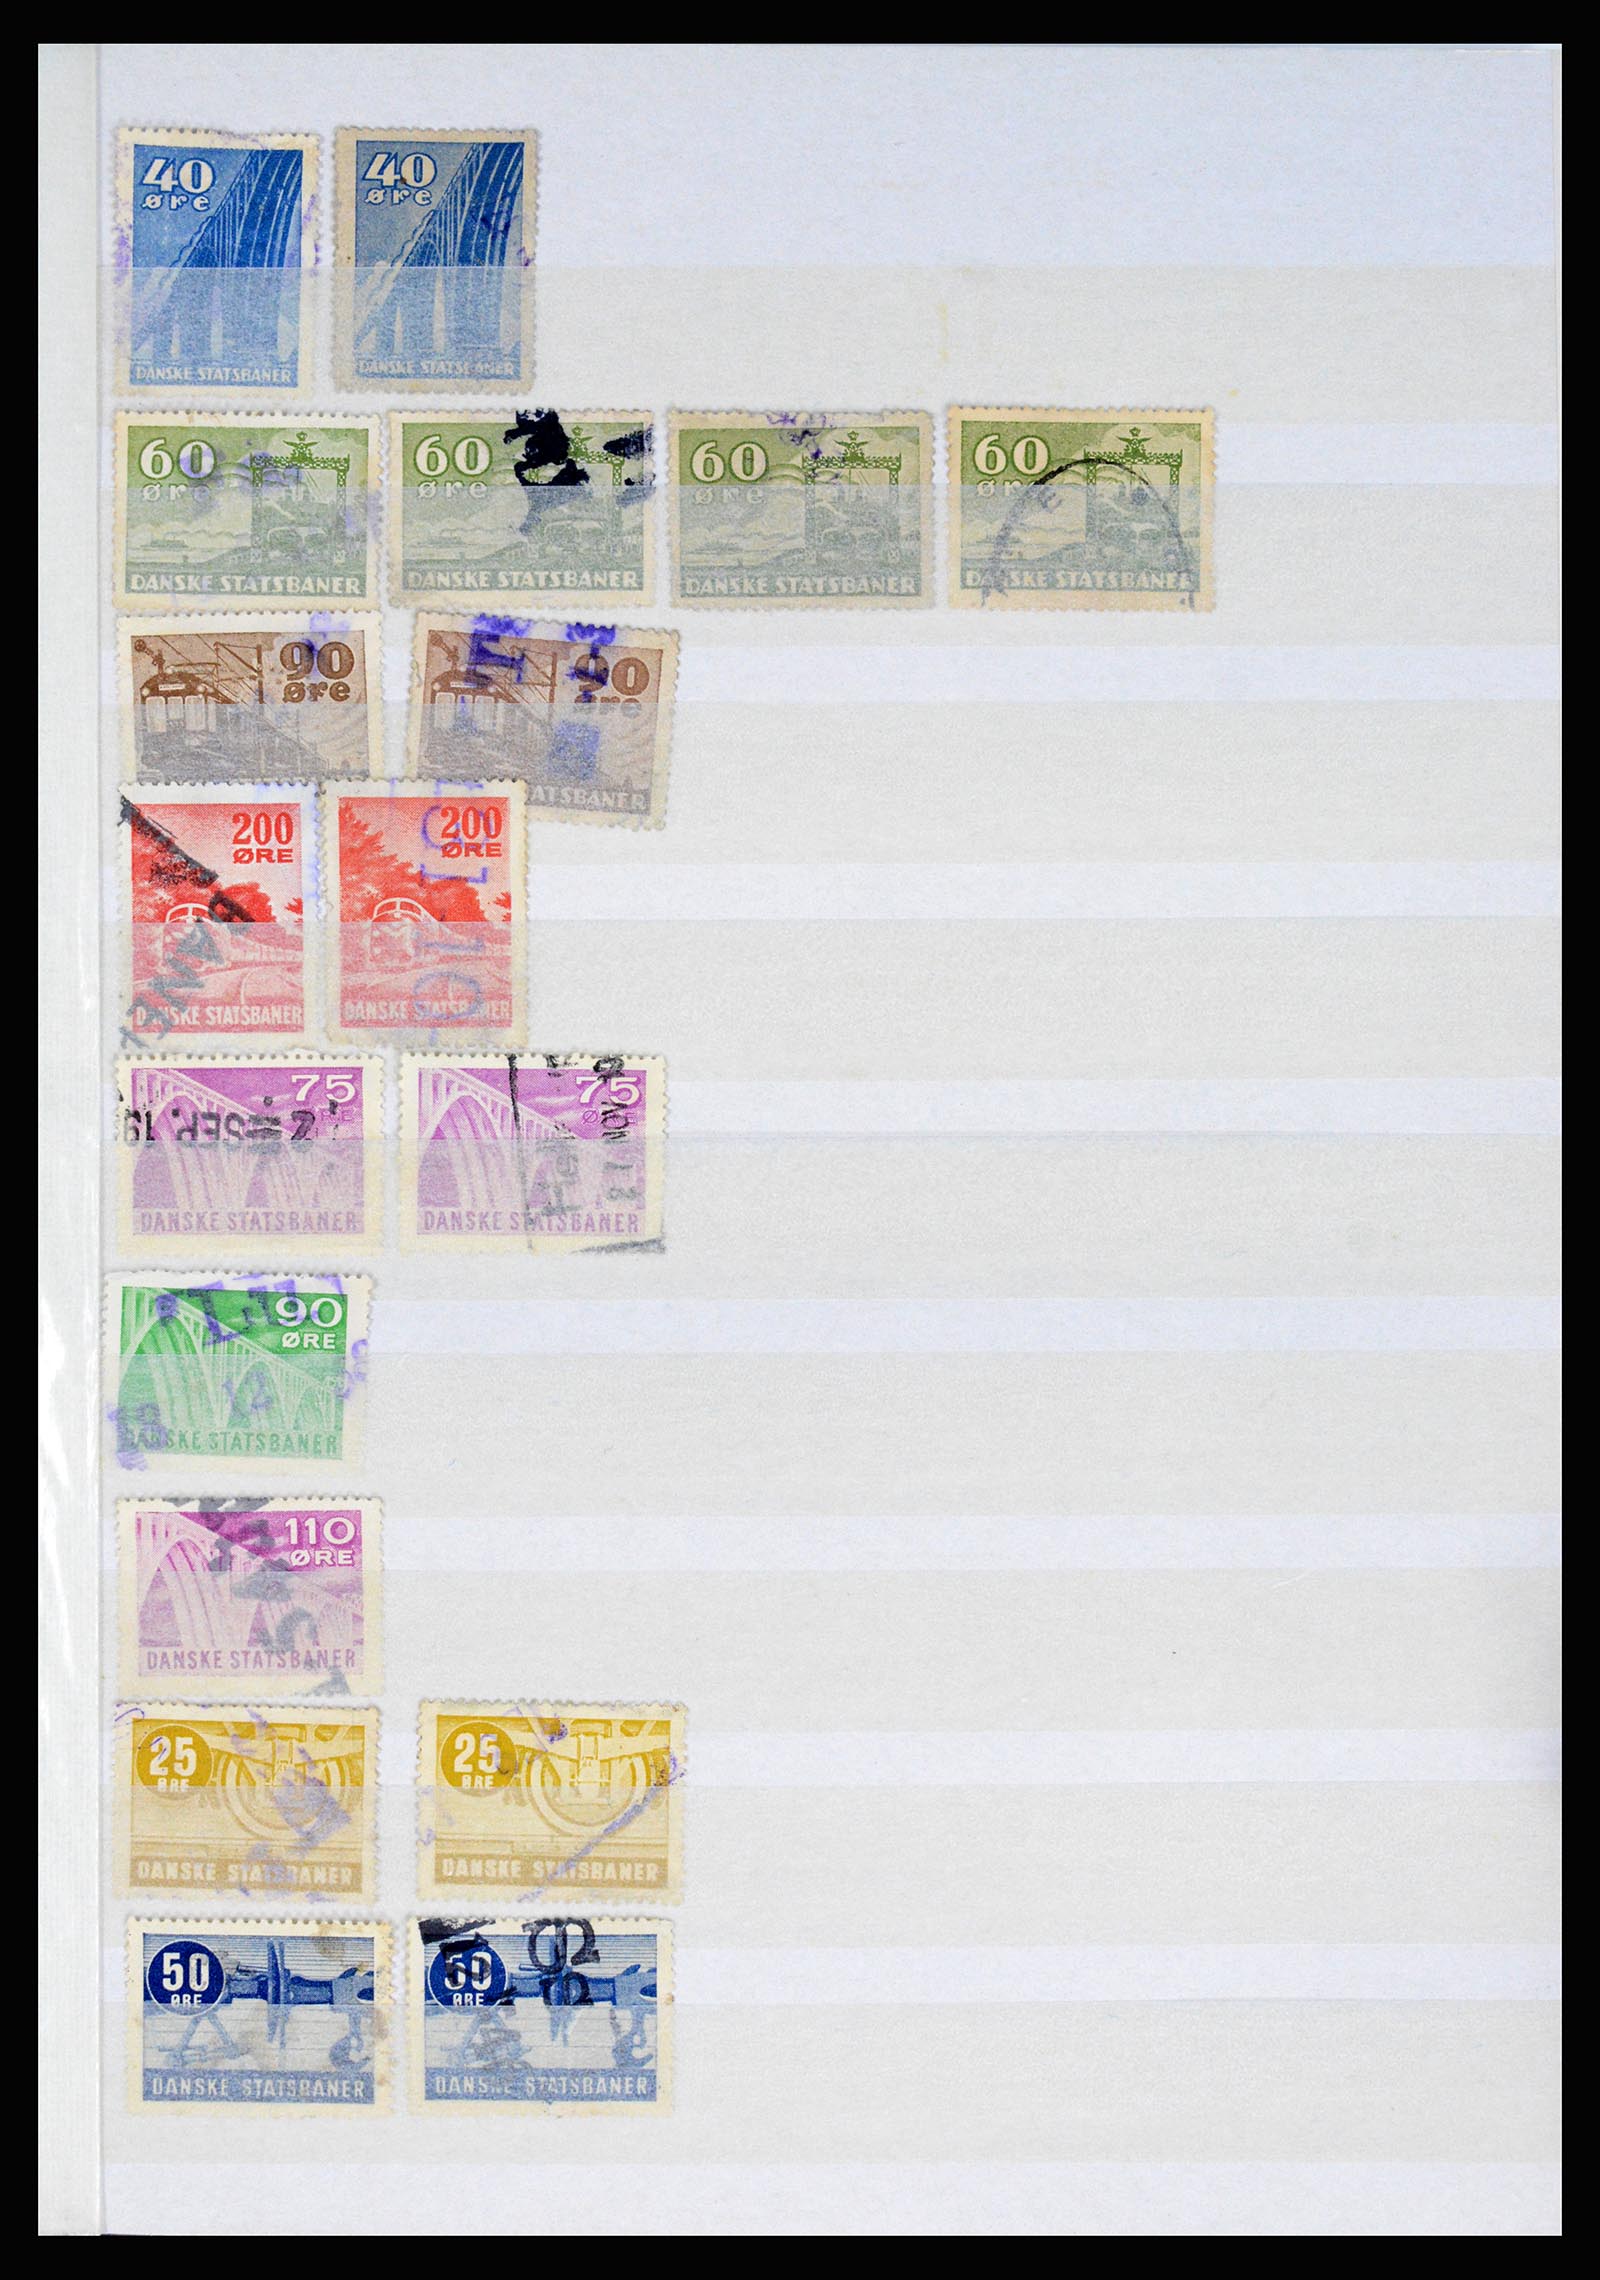 36982 007 - Postzegelverzameling 36982 Denemarken spoorwegzegels.